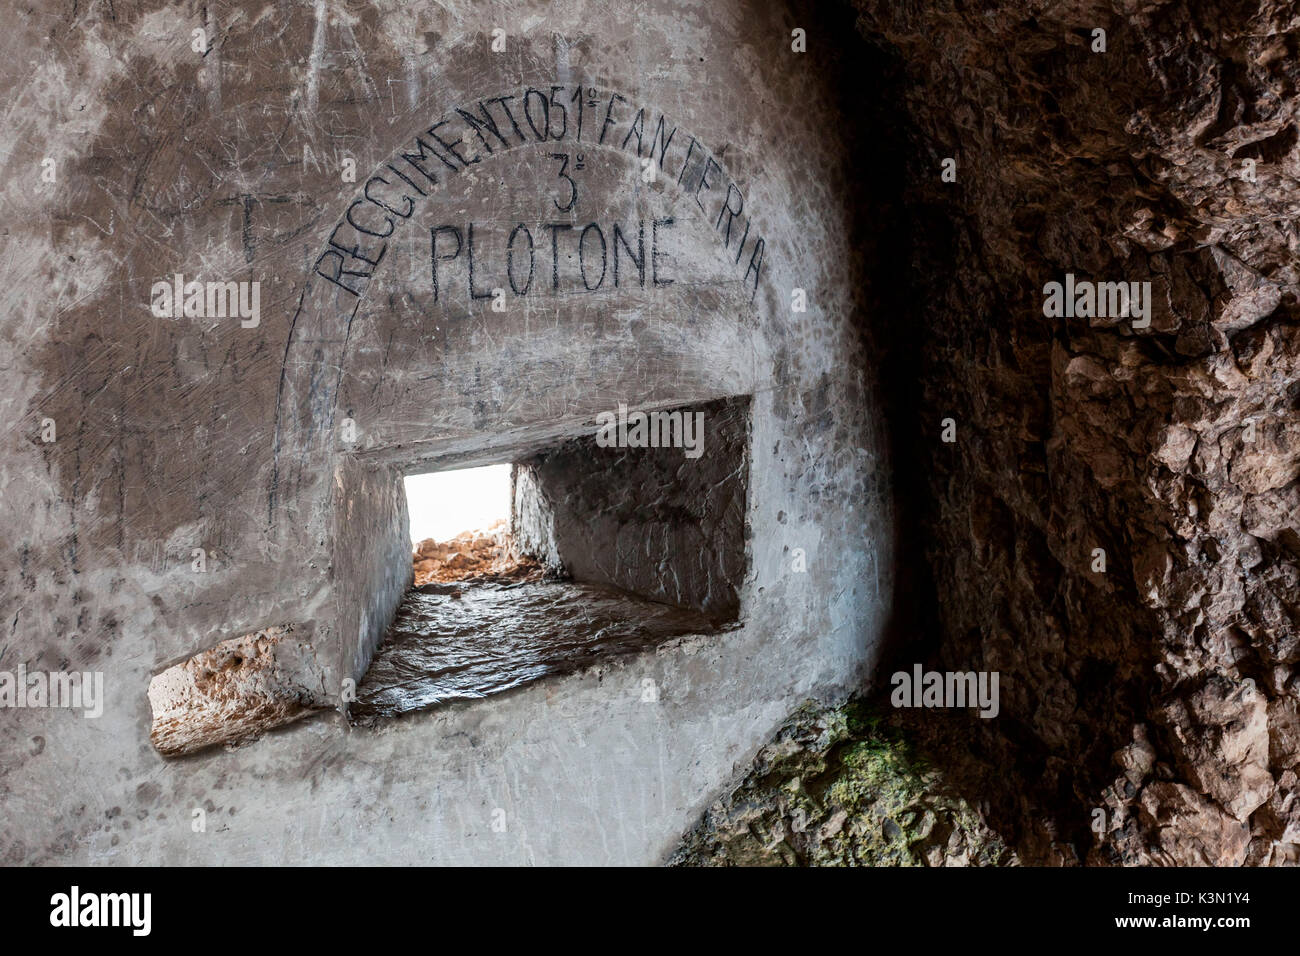 Fessura riprese in una grotta di Punta Serauta con '51 Reggimento di Fanteria, terzo plotone', Marmolada, Dolomiti Foto Stock